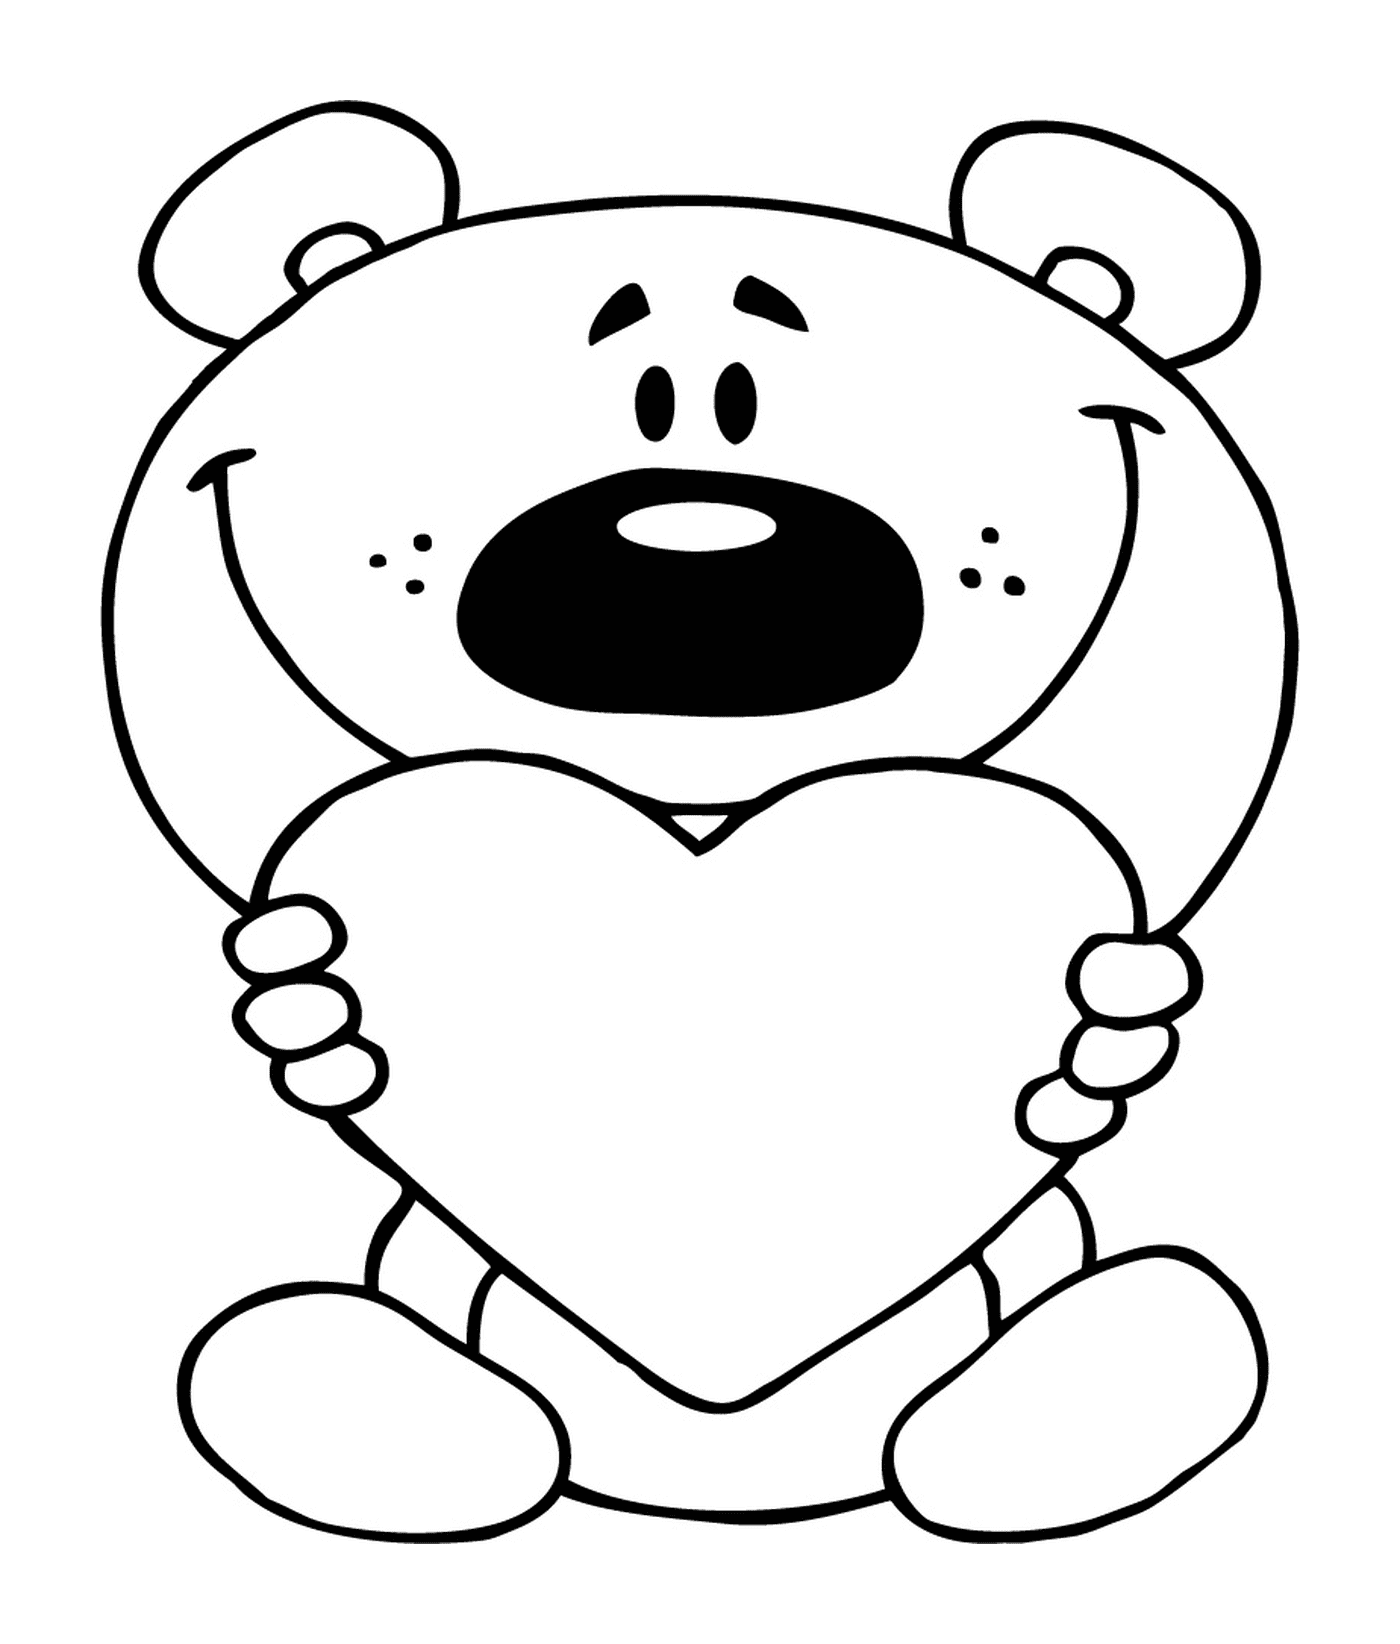  A teddy bear holding a heart 